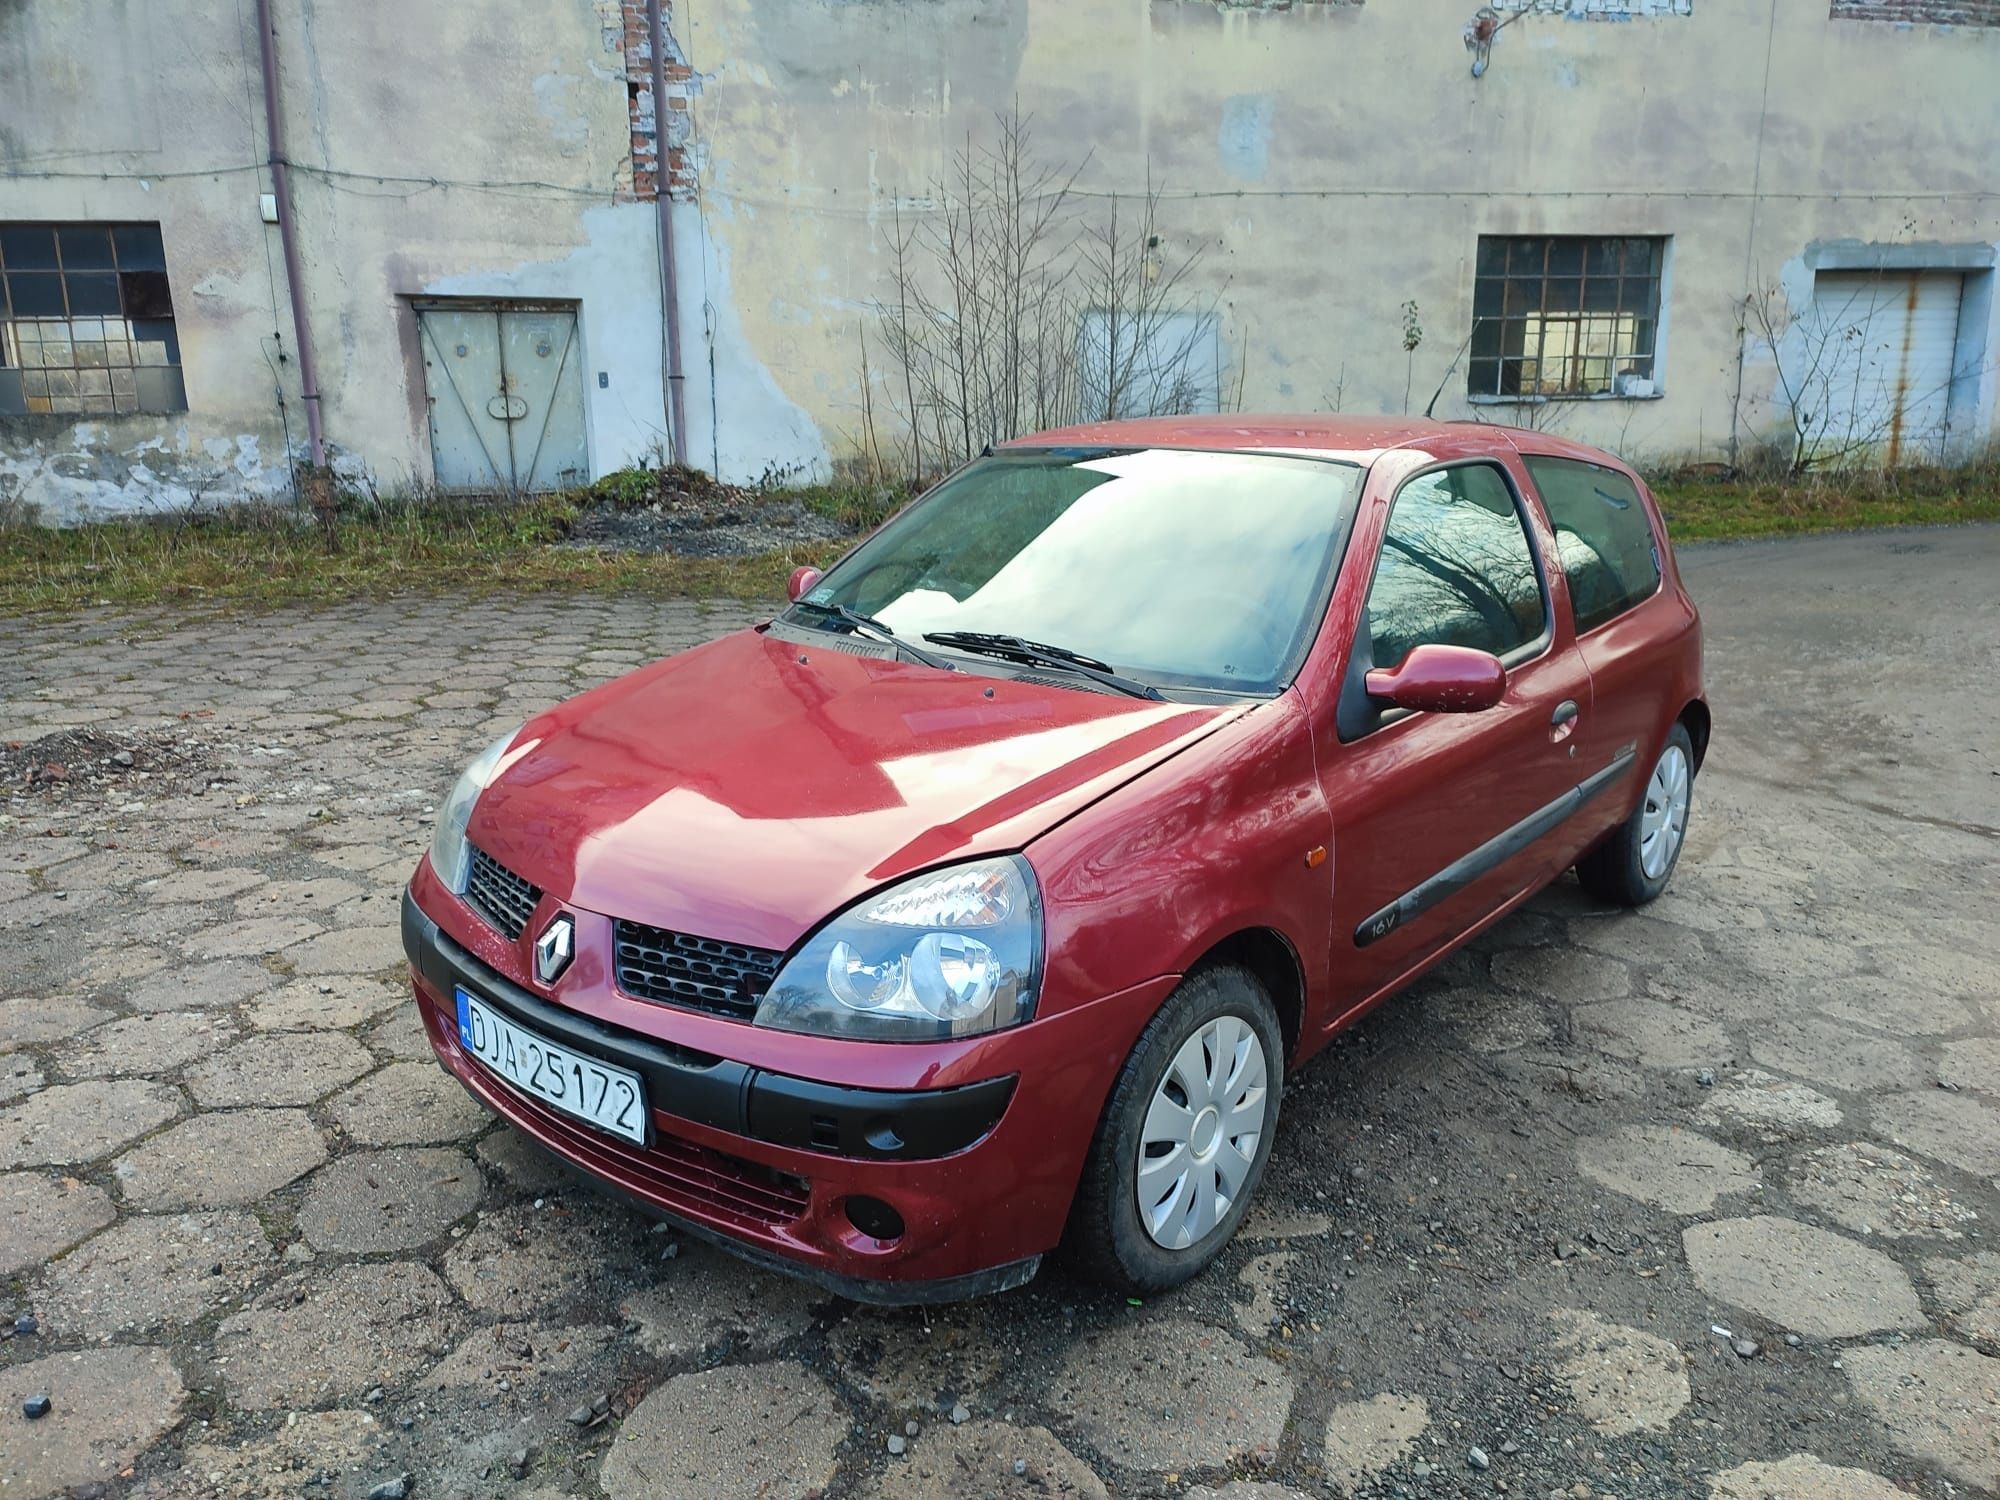 Renault Clio 1.2 Benzyna! 2002r! Lift! Ważne opłaty! Opony zimowe! Lubawka  • OLX.pl